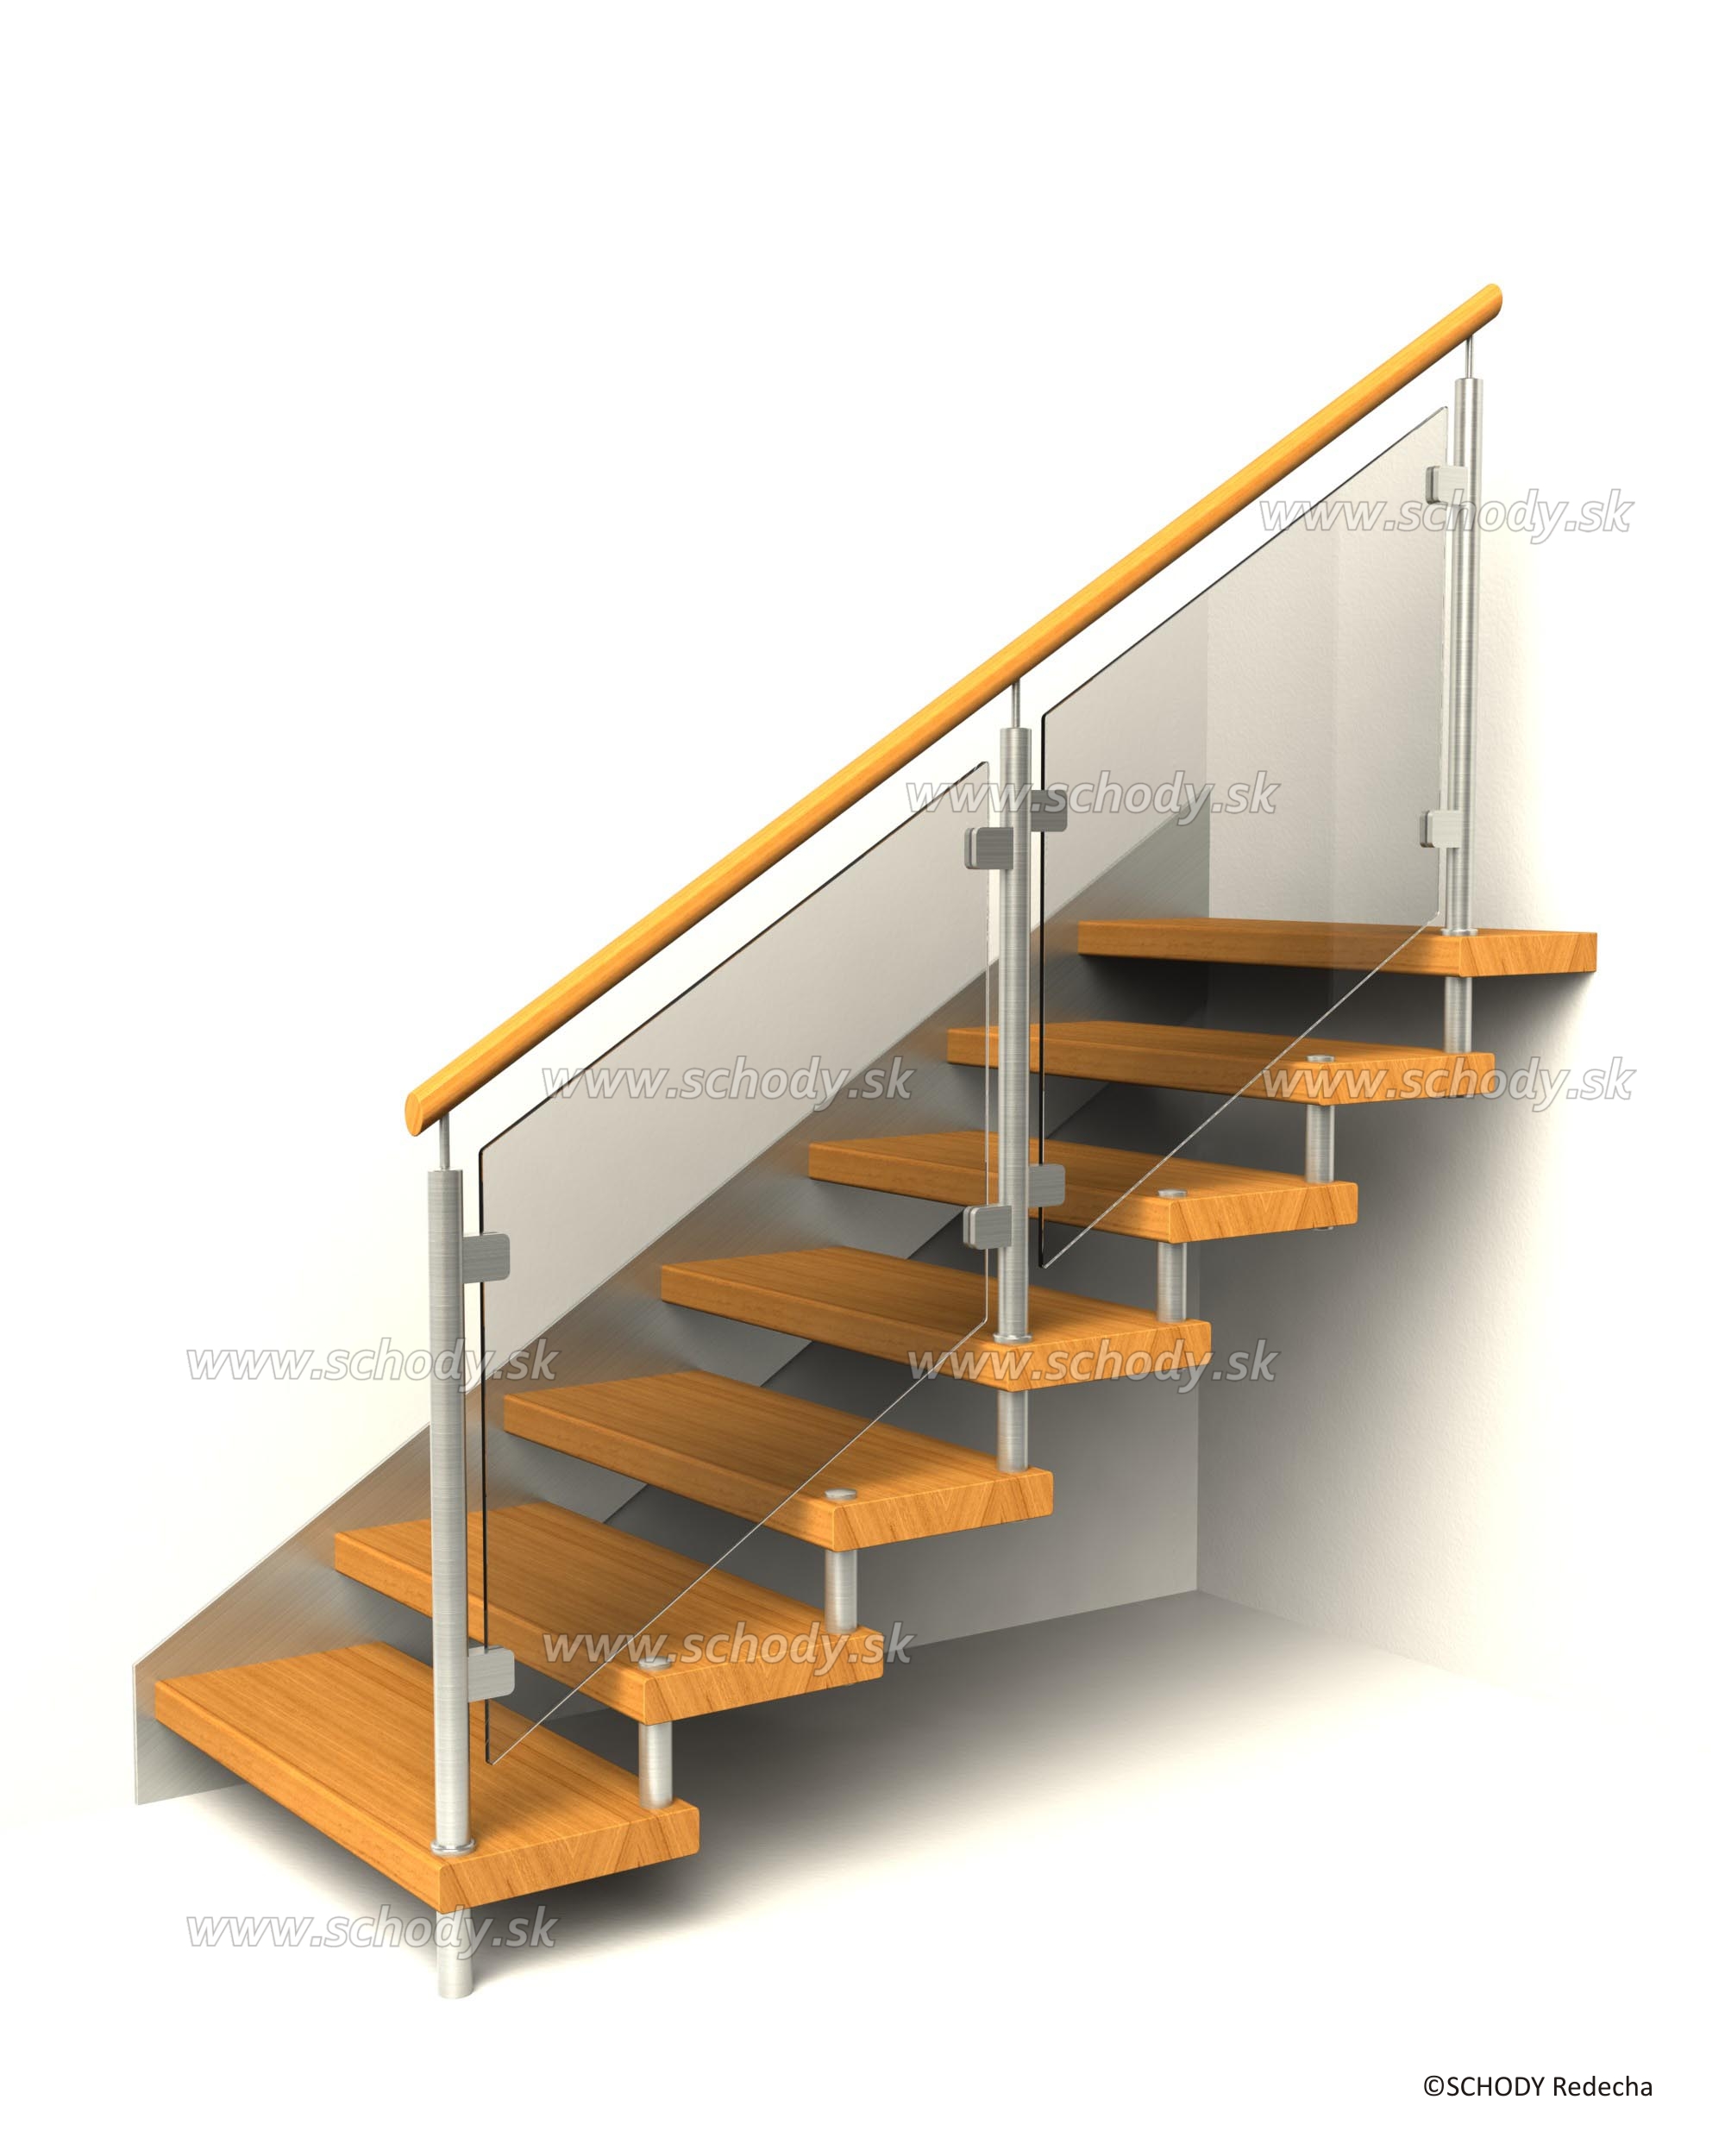 svornikova schodiste schody VIII23D6